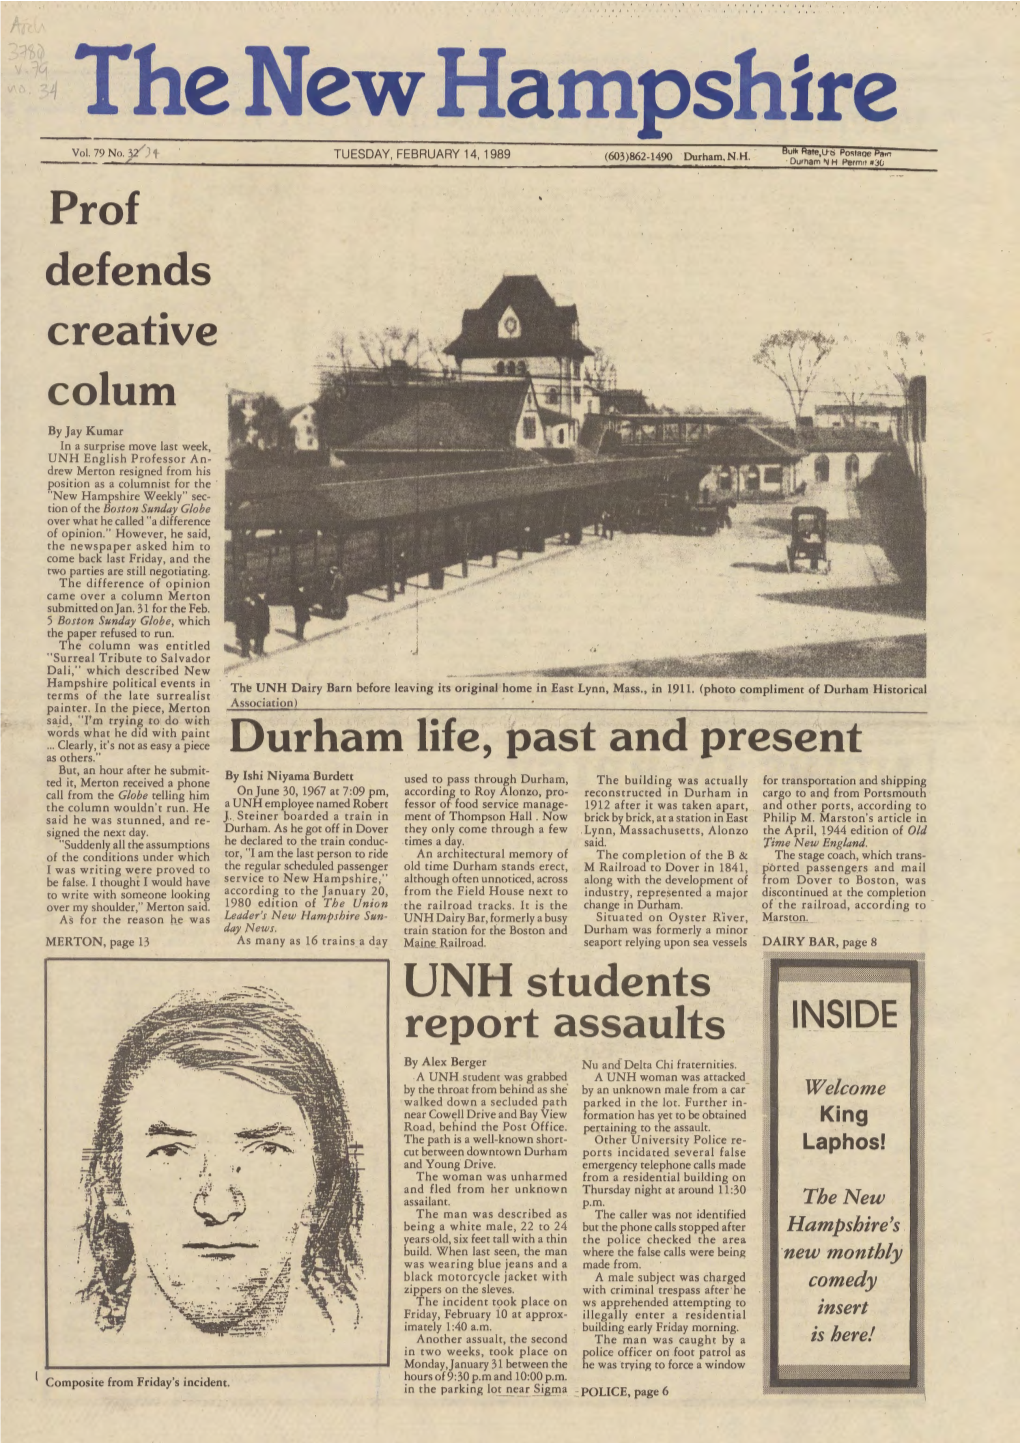 The New Hampshire, Vol. 79, No. 34 (Feb. 14, 1989)